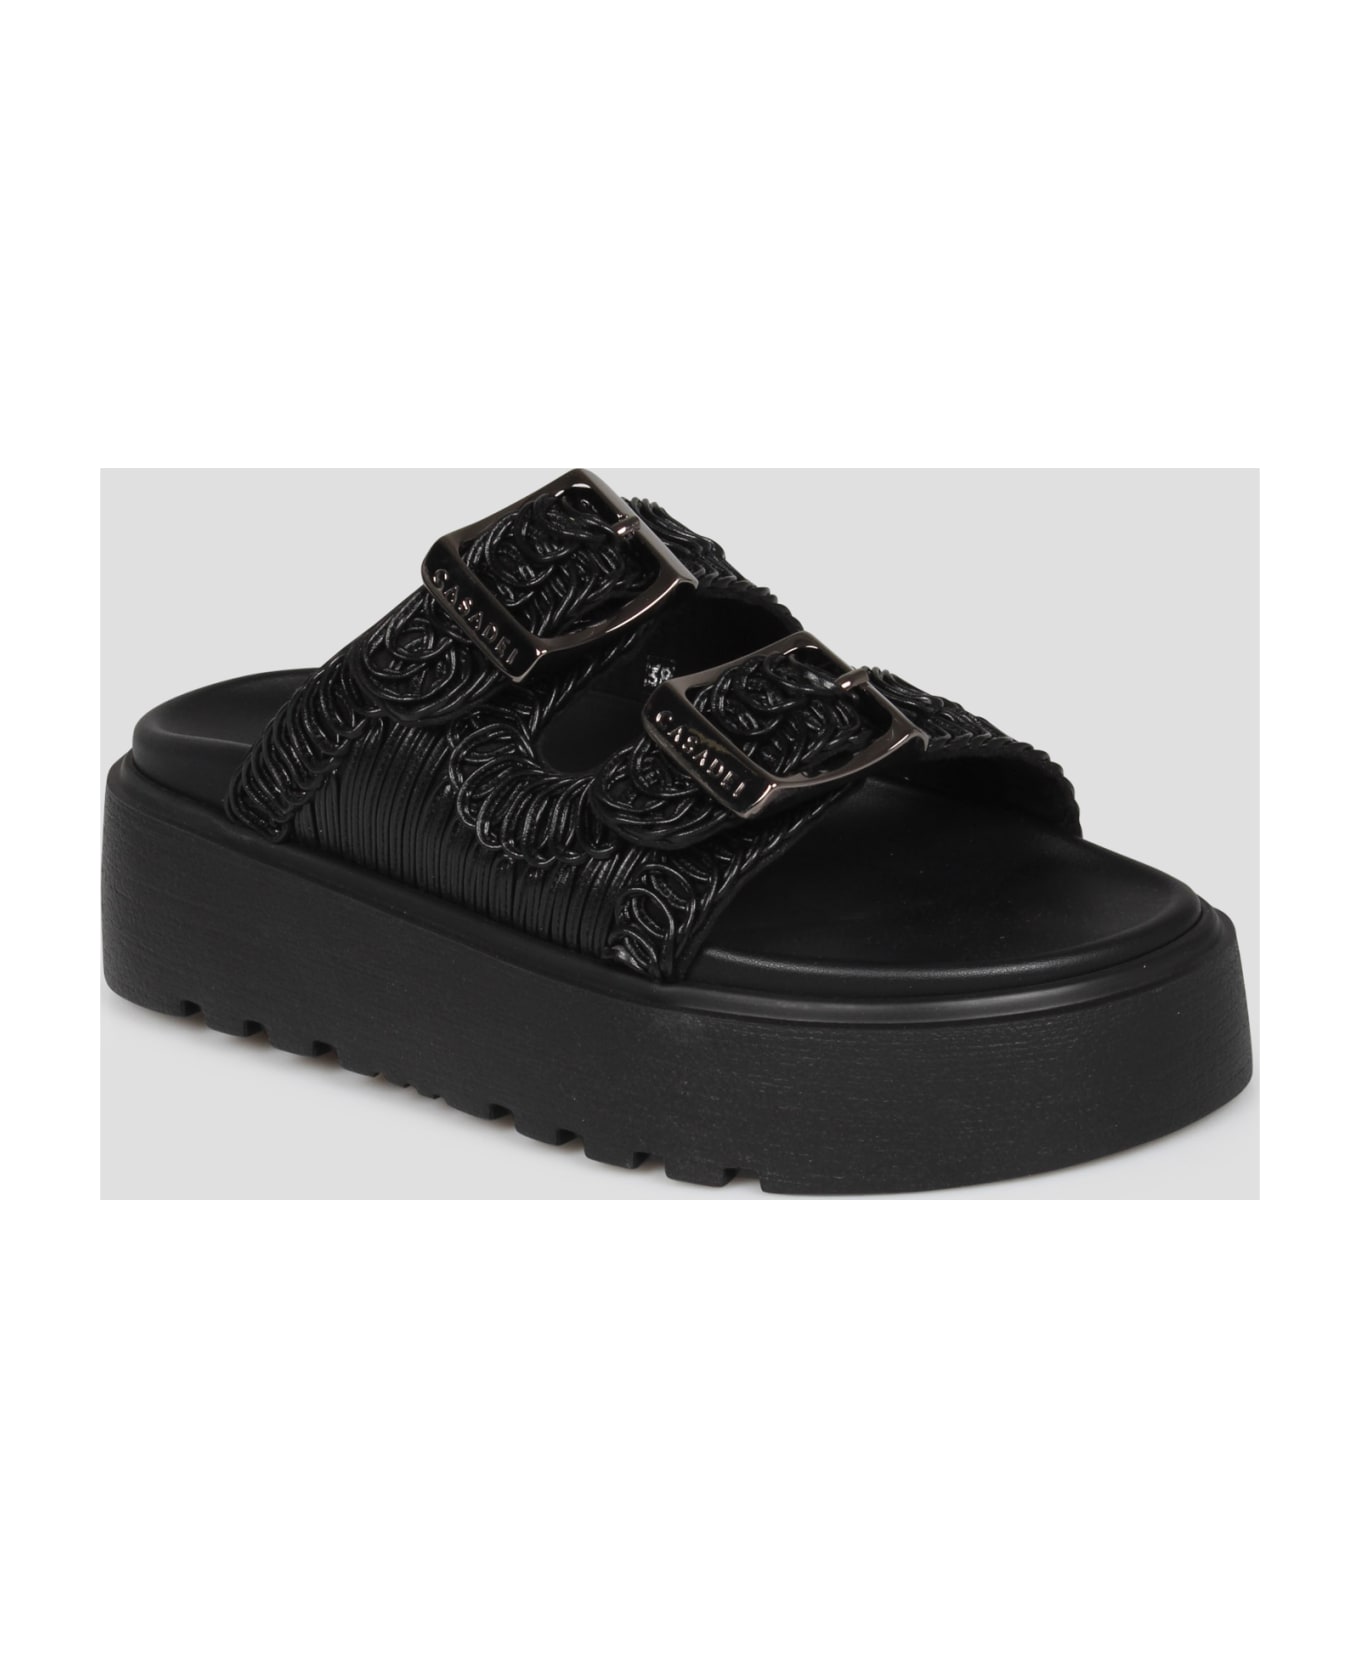 Casadei Birky Ale Slides Sandals - Black